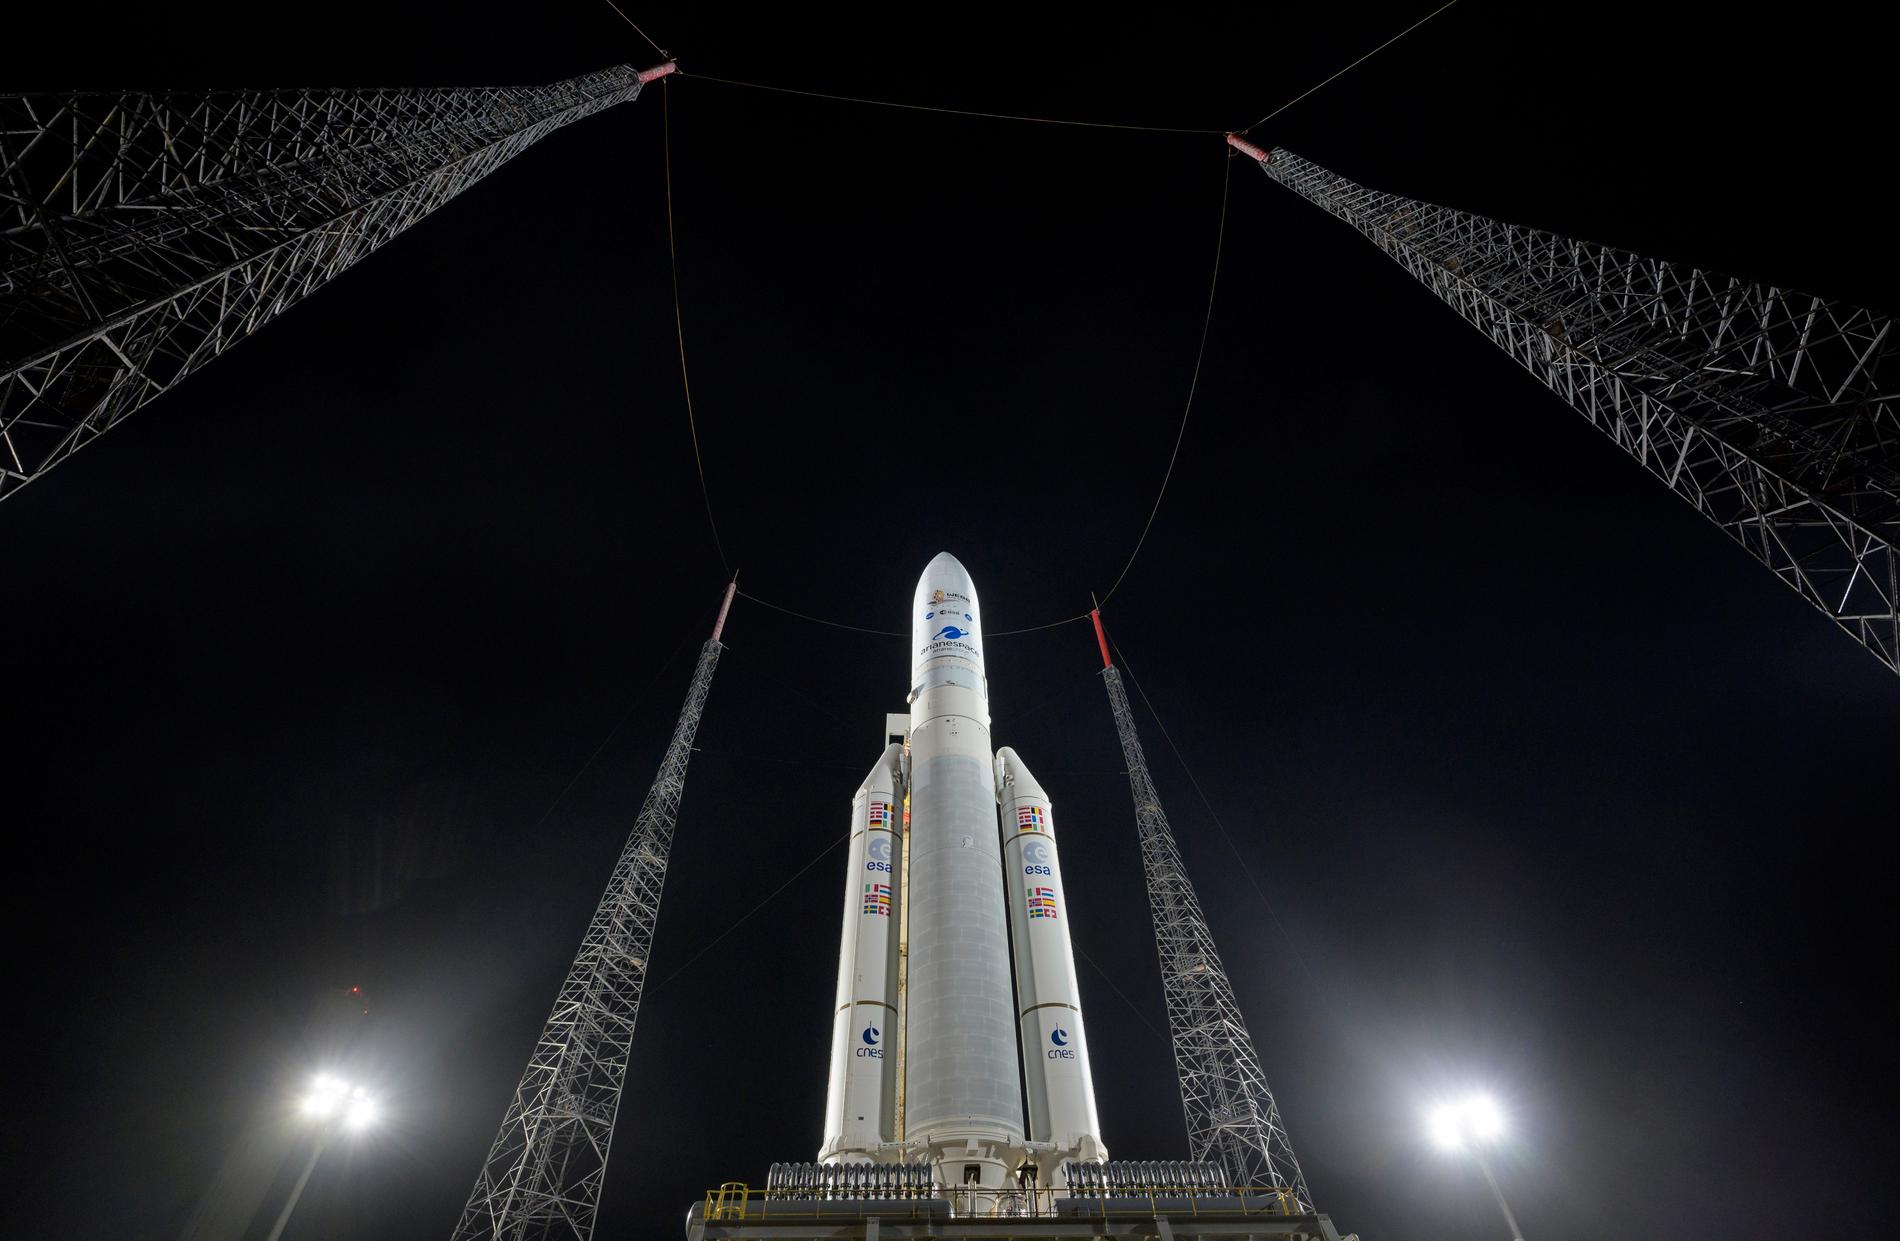 Arianespaces Ariane 5-raket på plats vid uppskjutningsrampen på Guyana Space Center i Kourou i Franska Guyana. Rymdteleskopet James Webb är inpackat ombord. Bilden är från i torsdags. 